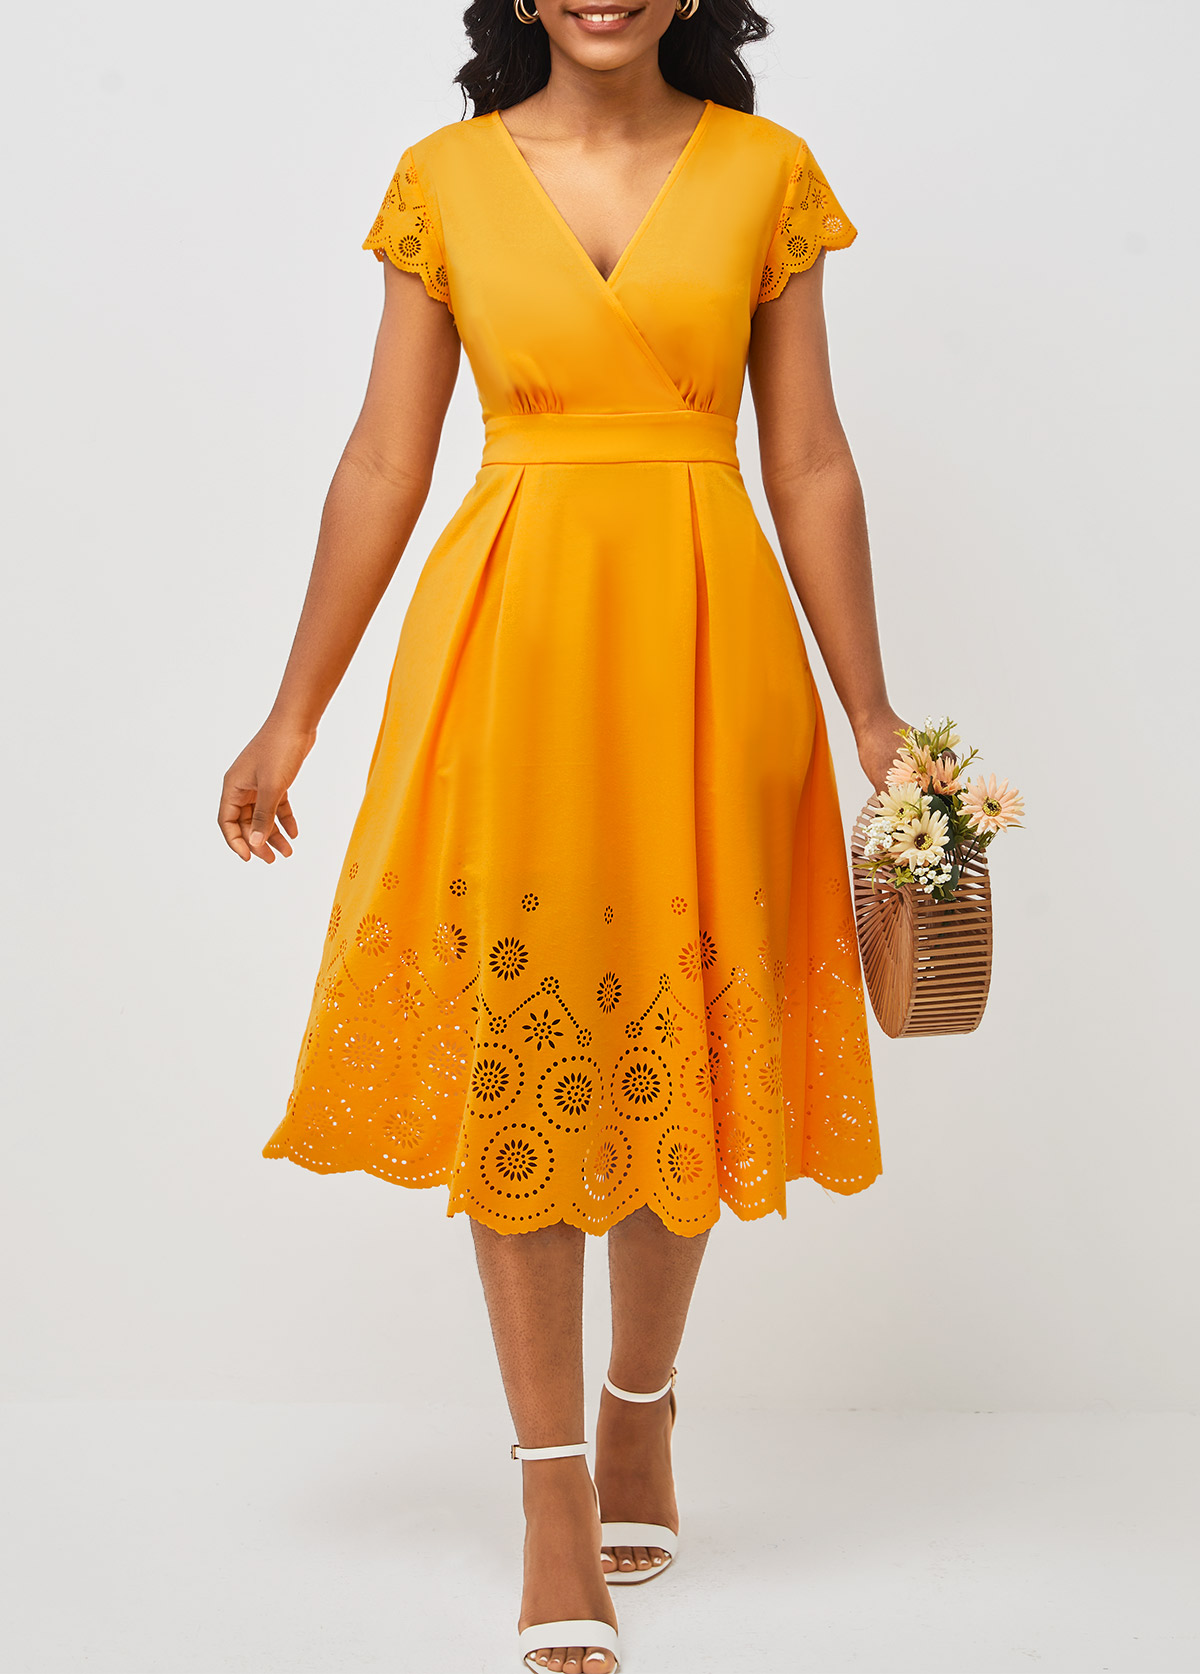 Floral Design Double Side Pockets Orange V Neck Dress